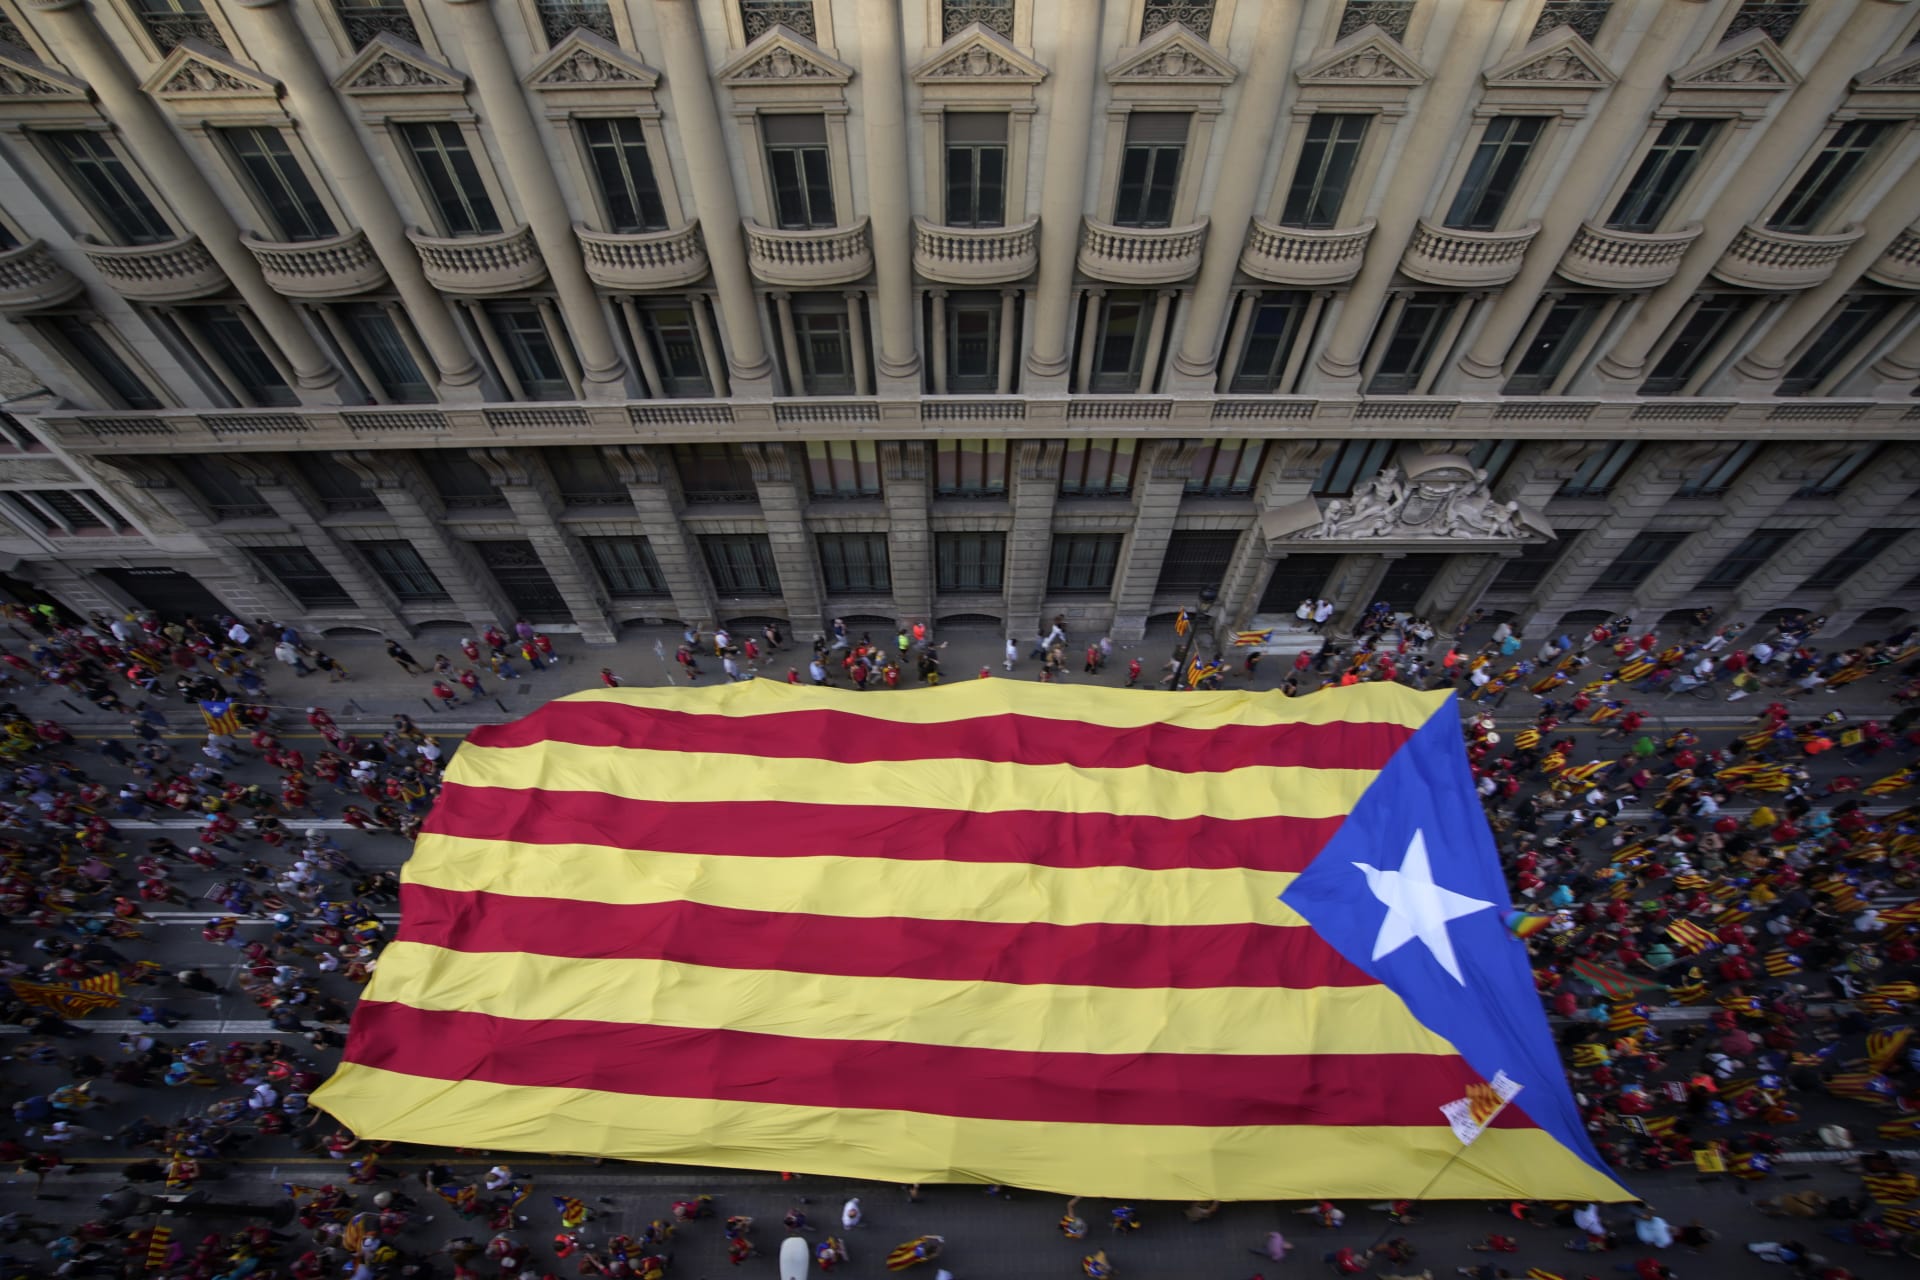 Barcelonou prošlo přes 100 tisíc demonstrantů volajících po nezávislosti Katalánska.